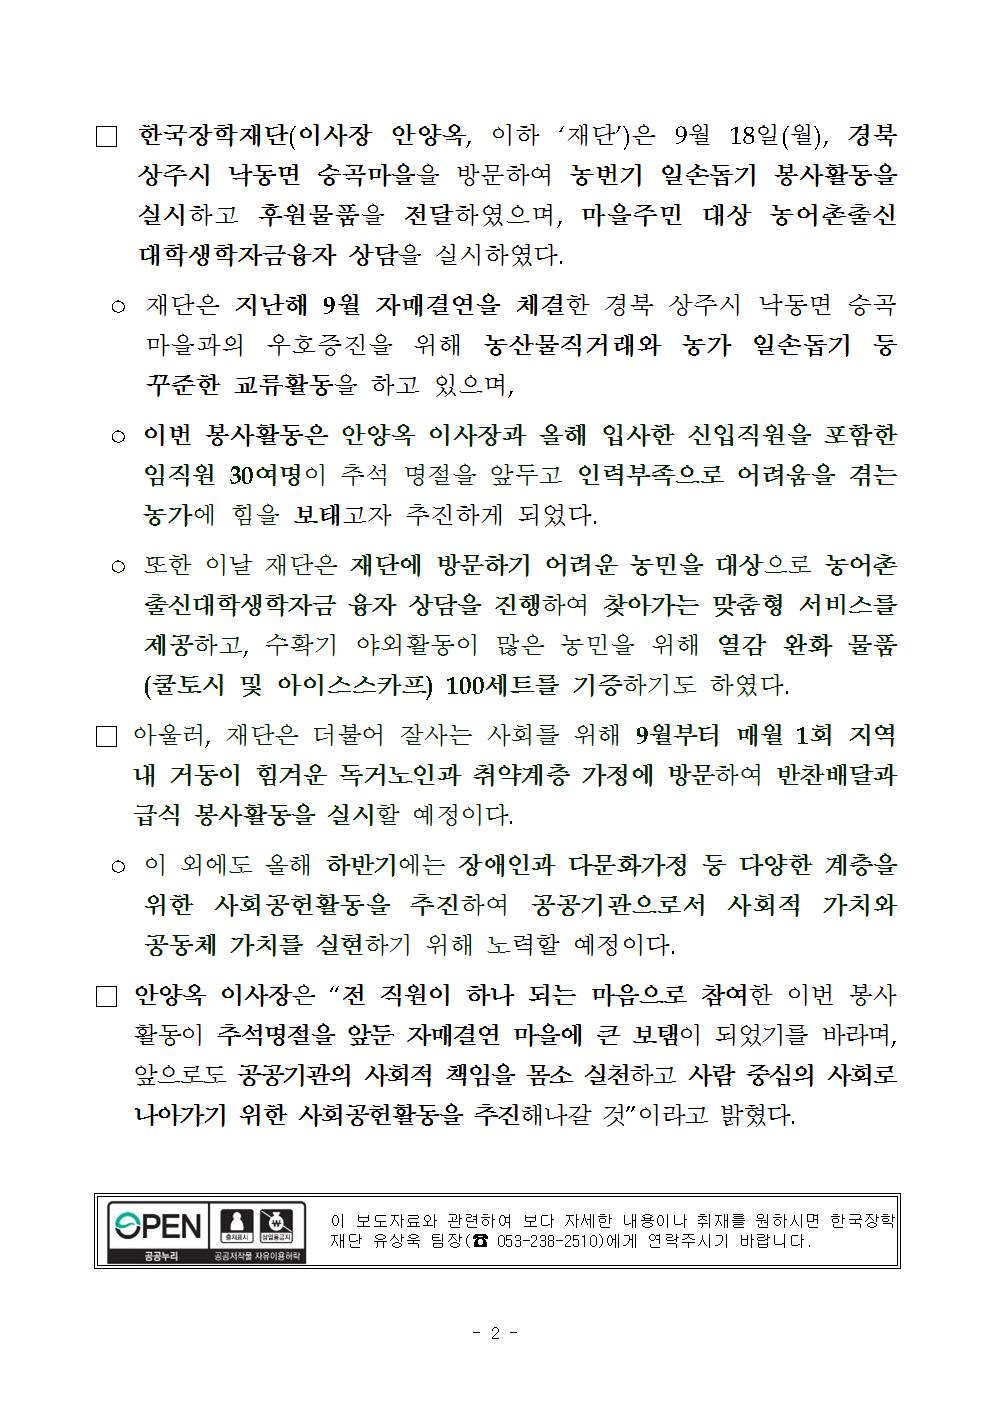 09-19(화)[보도자료] 한국장학재단, 자매결연마을 일손돕기 봉사활동 실시002.jpg